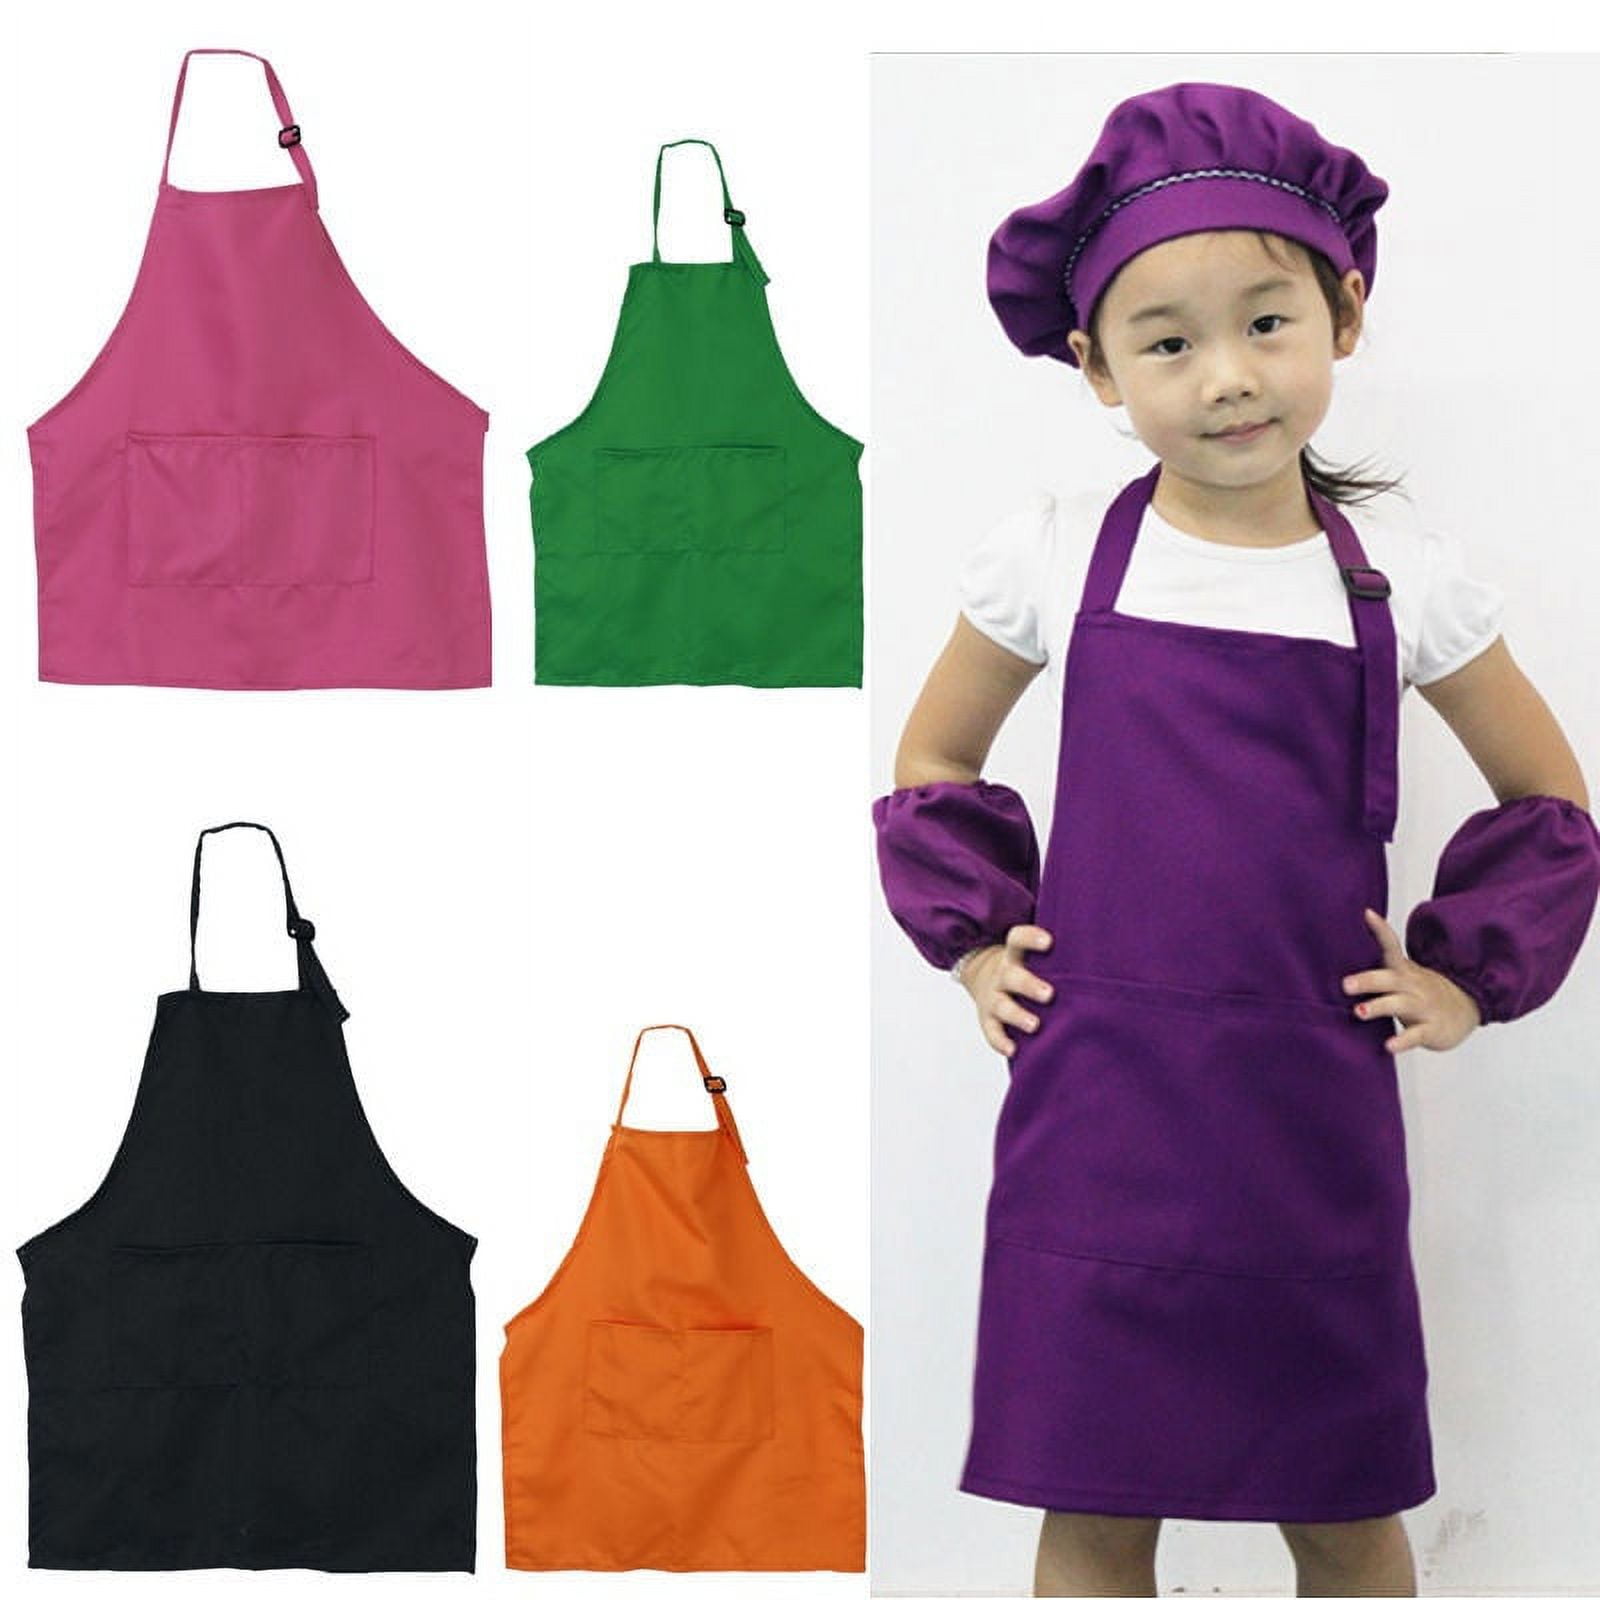 Giwawa Children Bib Apron Adjustable Aprons for Baking, Painting, Cooking